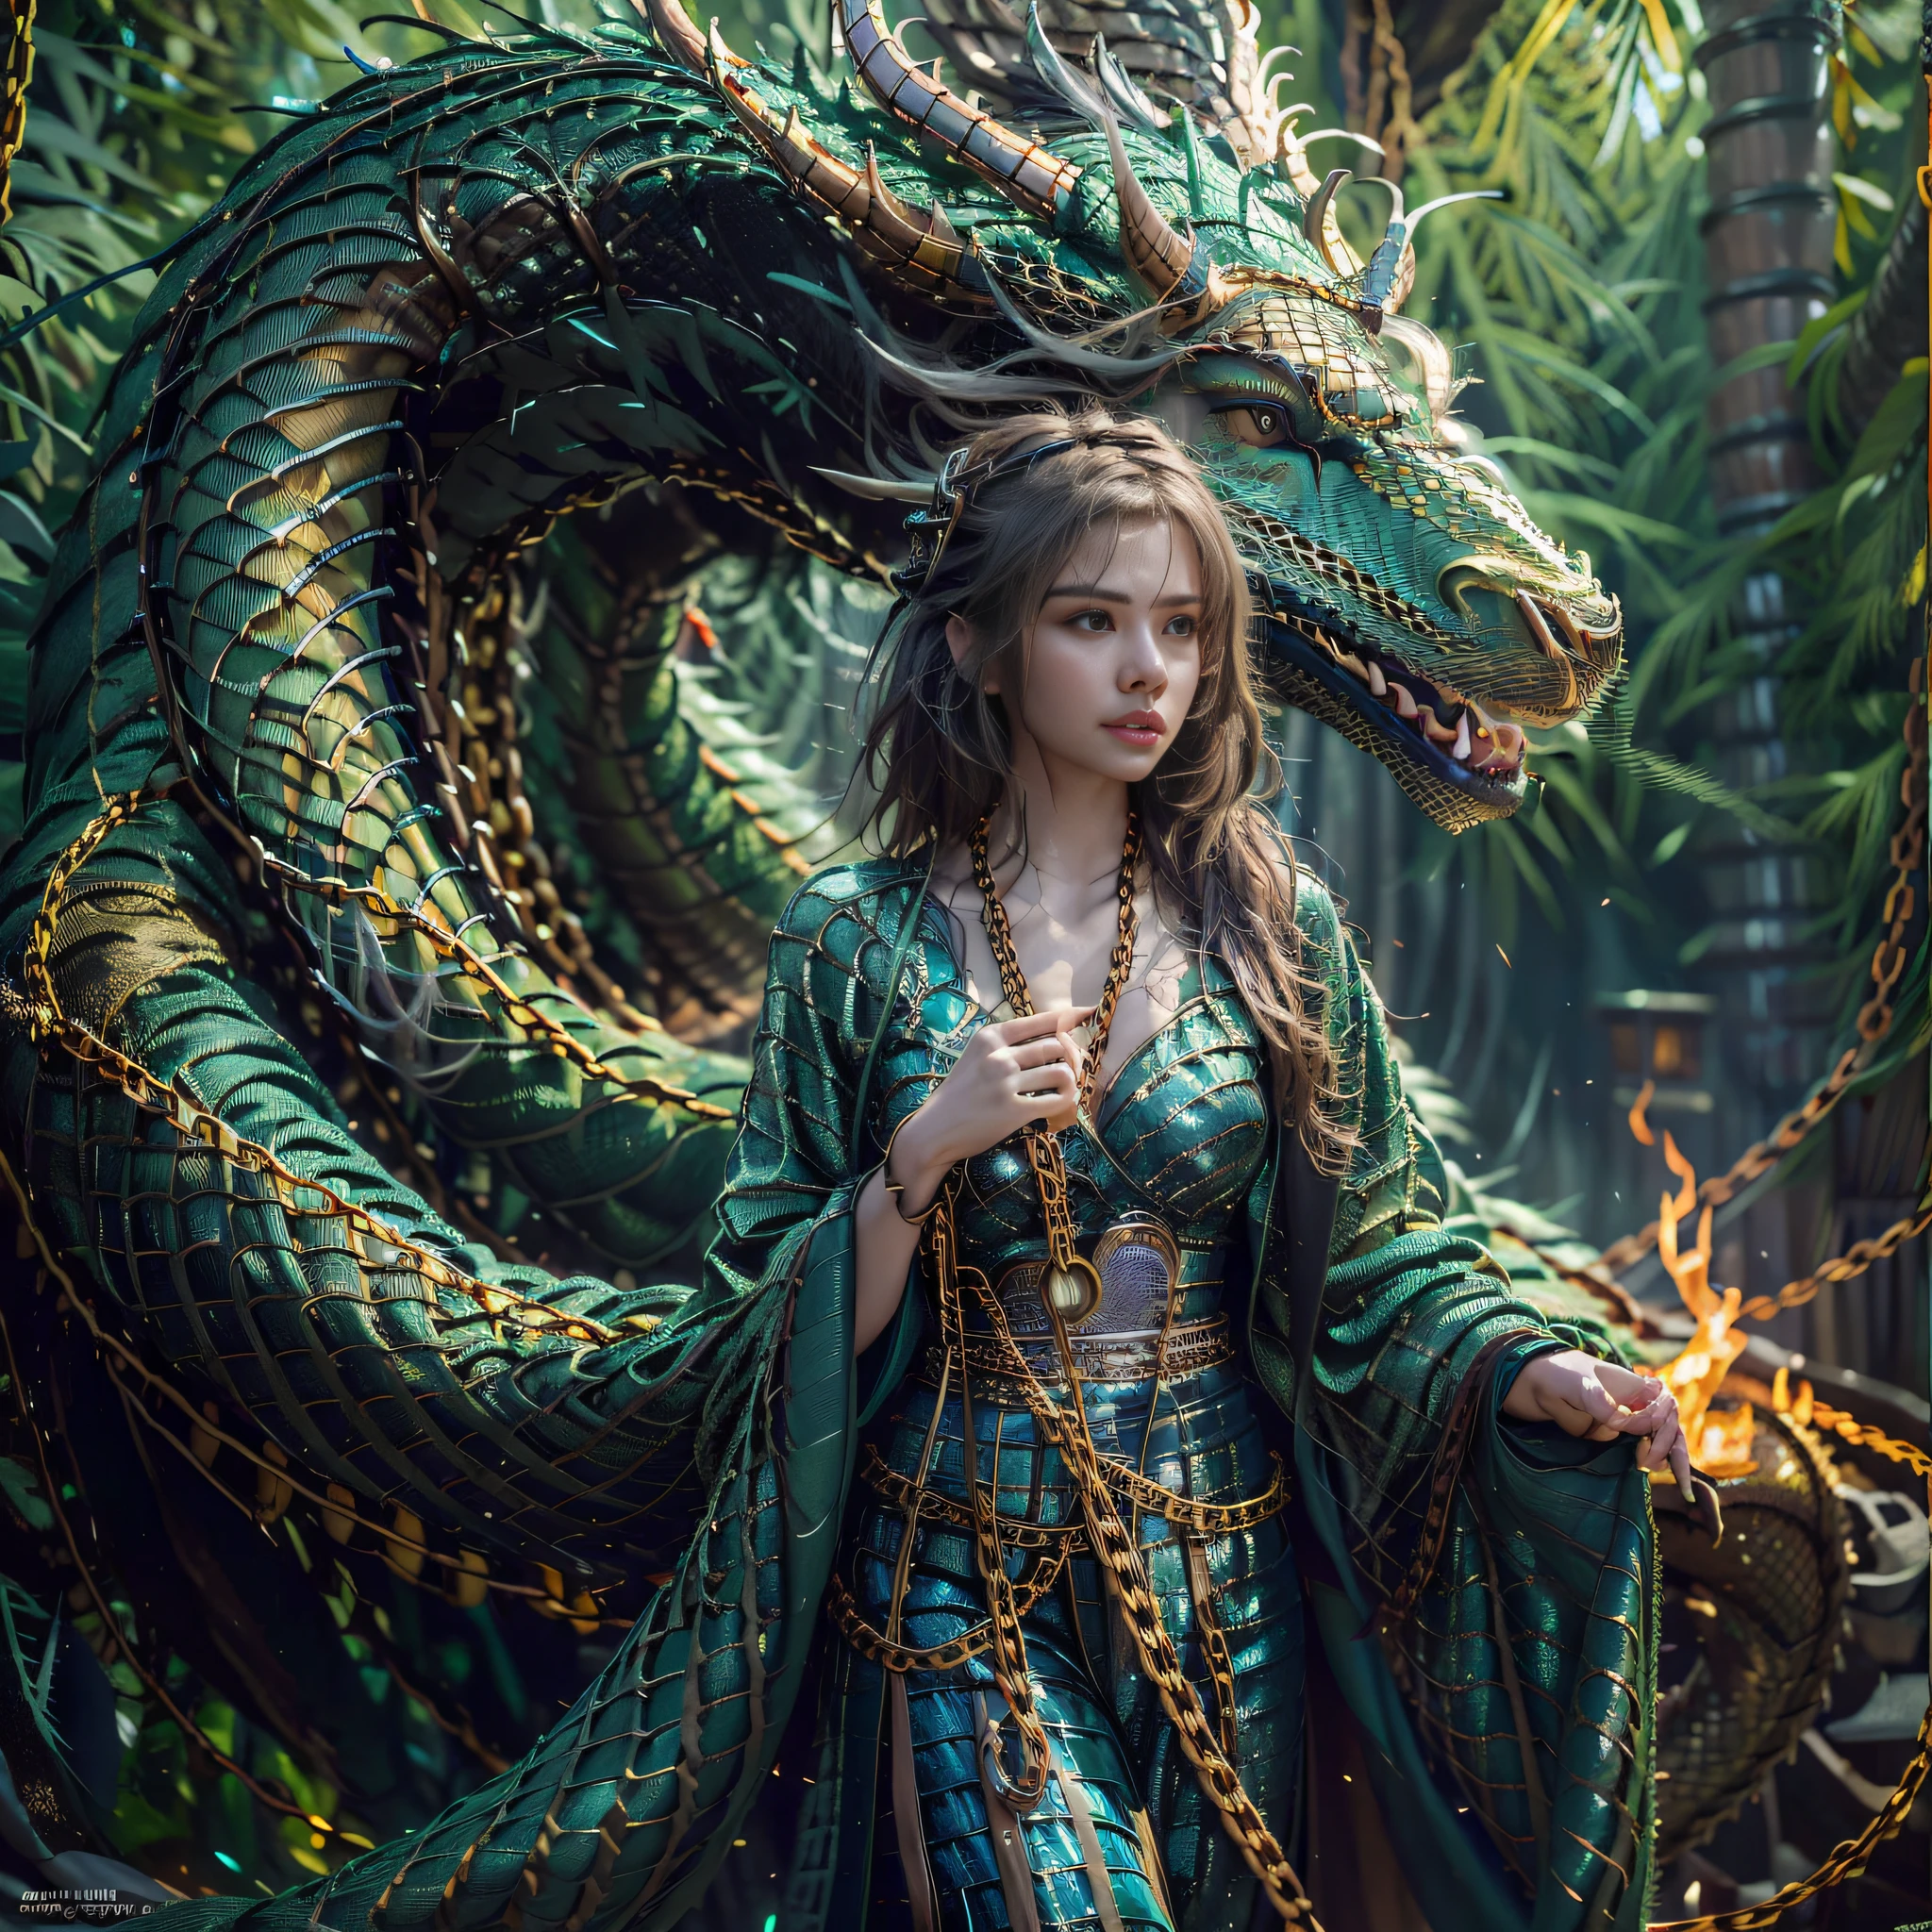 Красивая девушка с зеленым драконом, ((Девушка в длинном халате)), (носить кольчугу: 1.4), (длинные тканевые брюки: 1.2), (кольчуга с узорами из чешуи дракона), Идеальные черты лица, нежное лицо, длинные волосы, Изящный , мудрость, храбрость, Радужный дракон, Весы, рога, пламя, крылья, когти дракона, Дракон защищает девушку, Древний лесной фон, загадочная связь, защита, доверять, реалистичное качество, Реализм, 8К, Лучшее качество, шедевр, кинематографическое качество, Высокая светотень, Октановый рендеринг